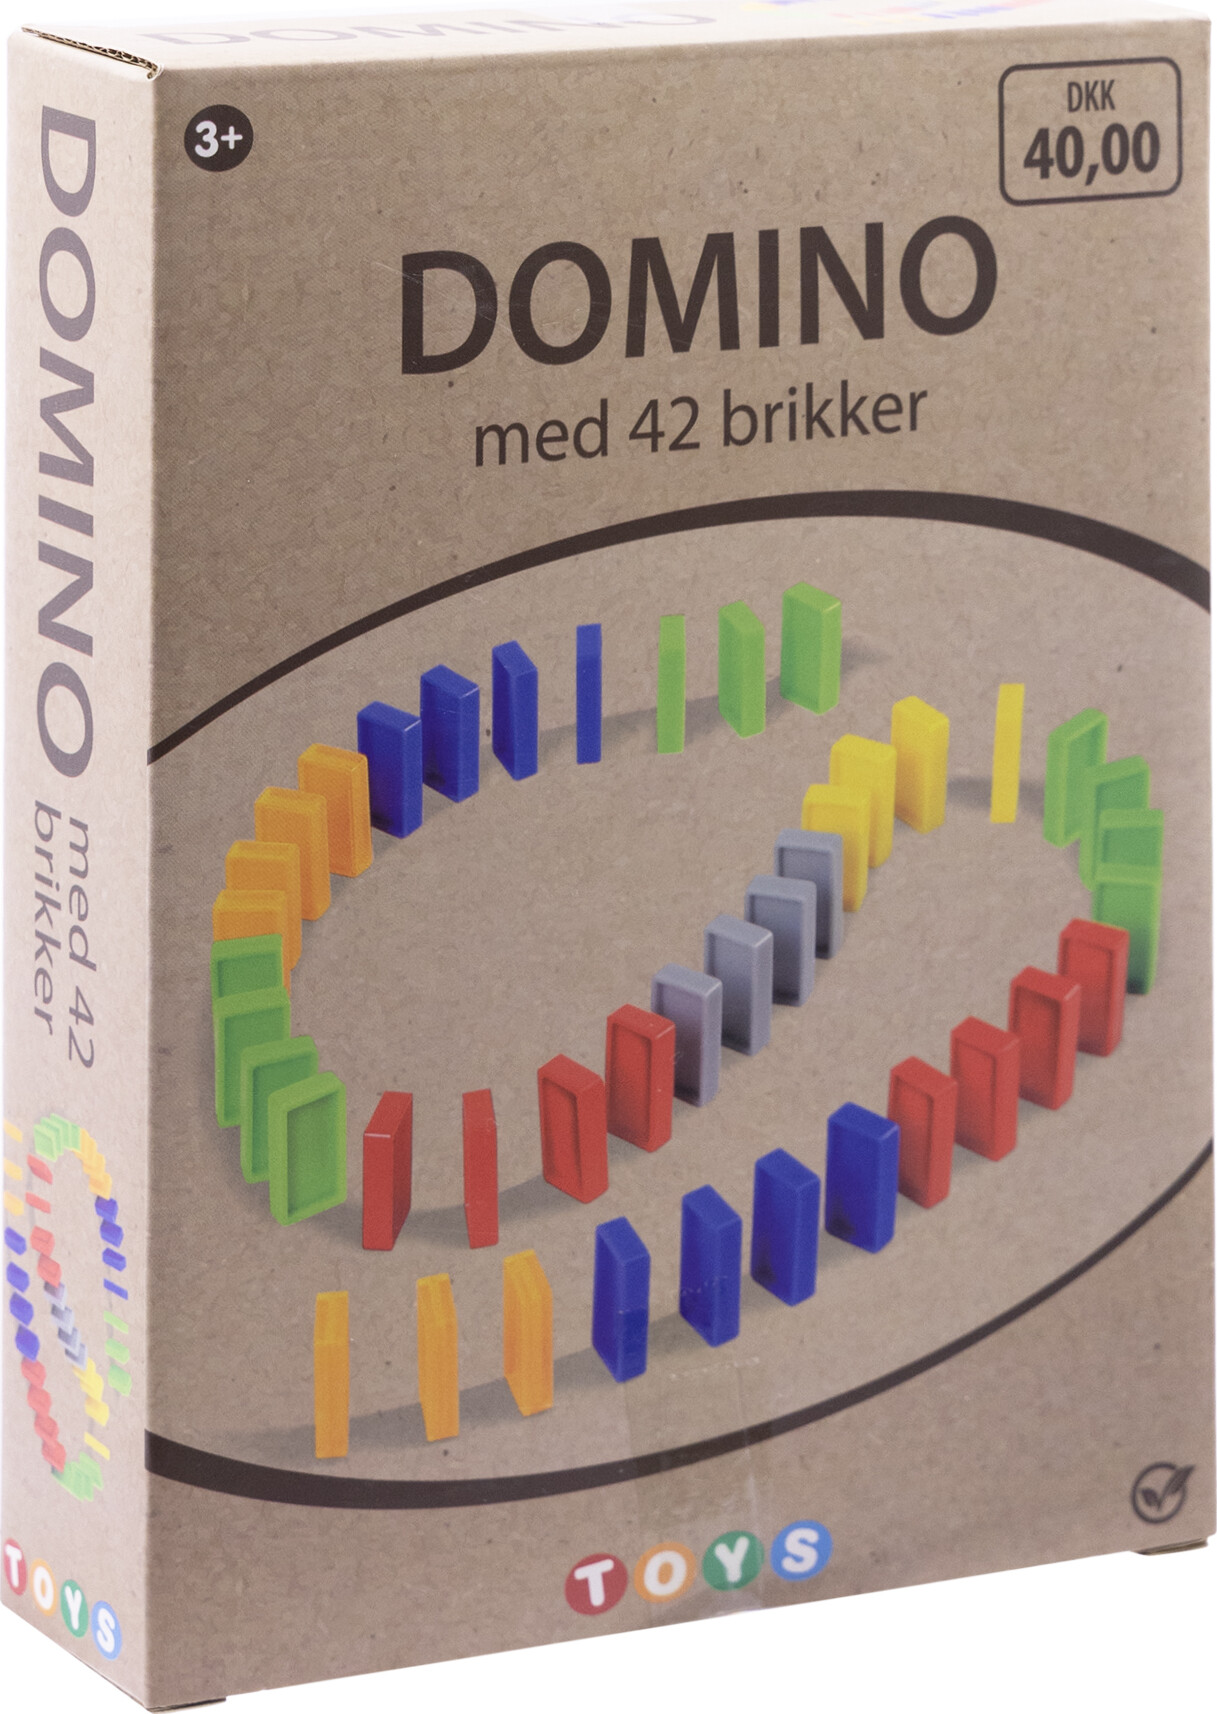 Domino Brikker - Spil Med 42 Brikker